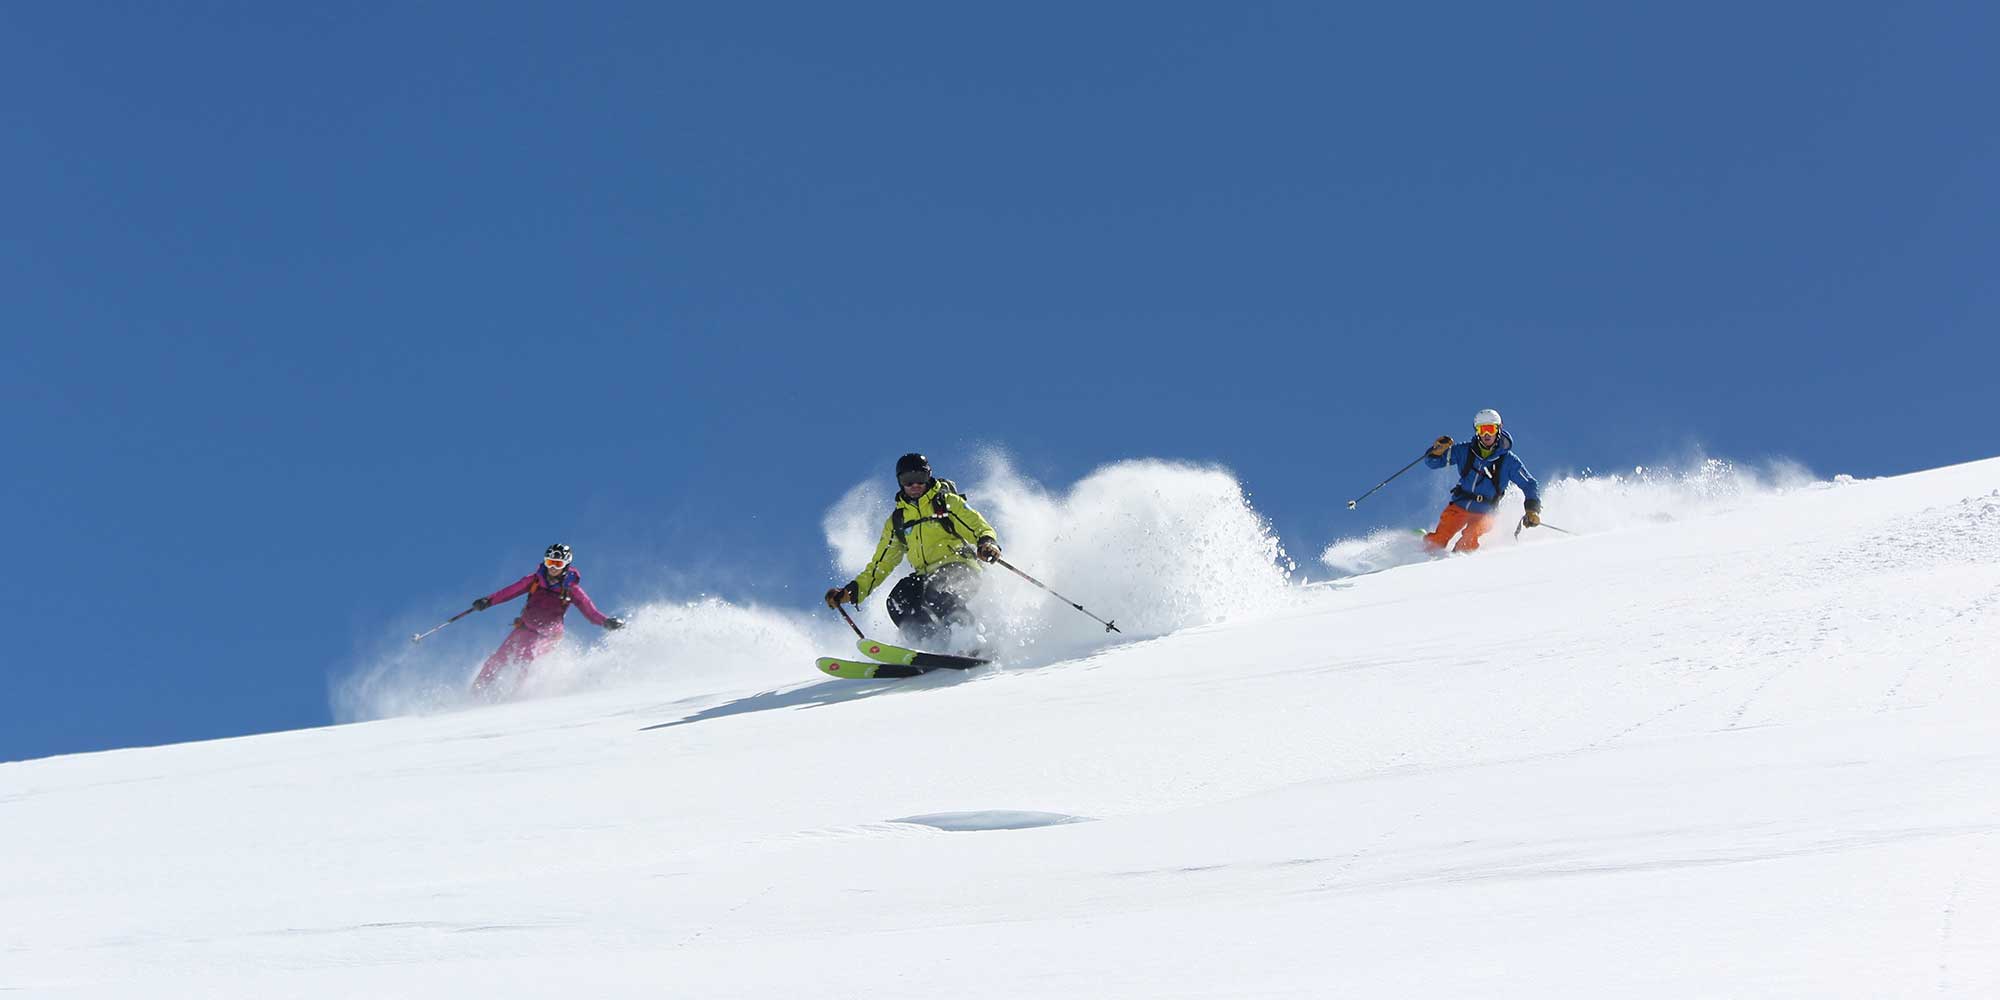 Sorties de ski en hors-piste avec accompagnateurs spécialisés